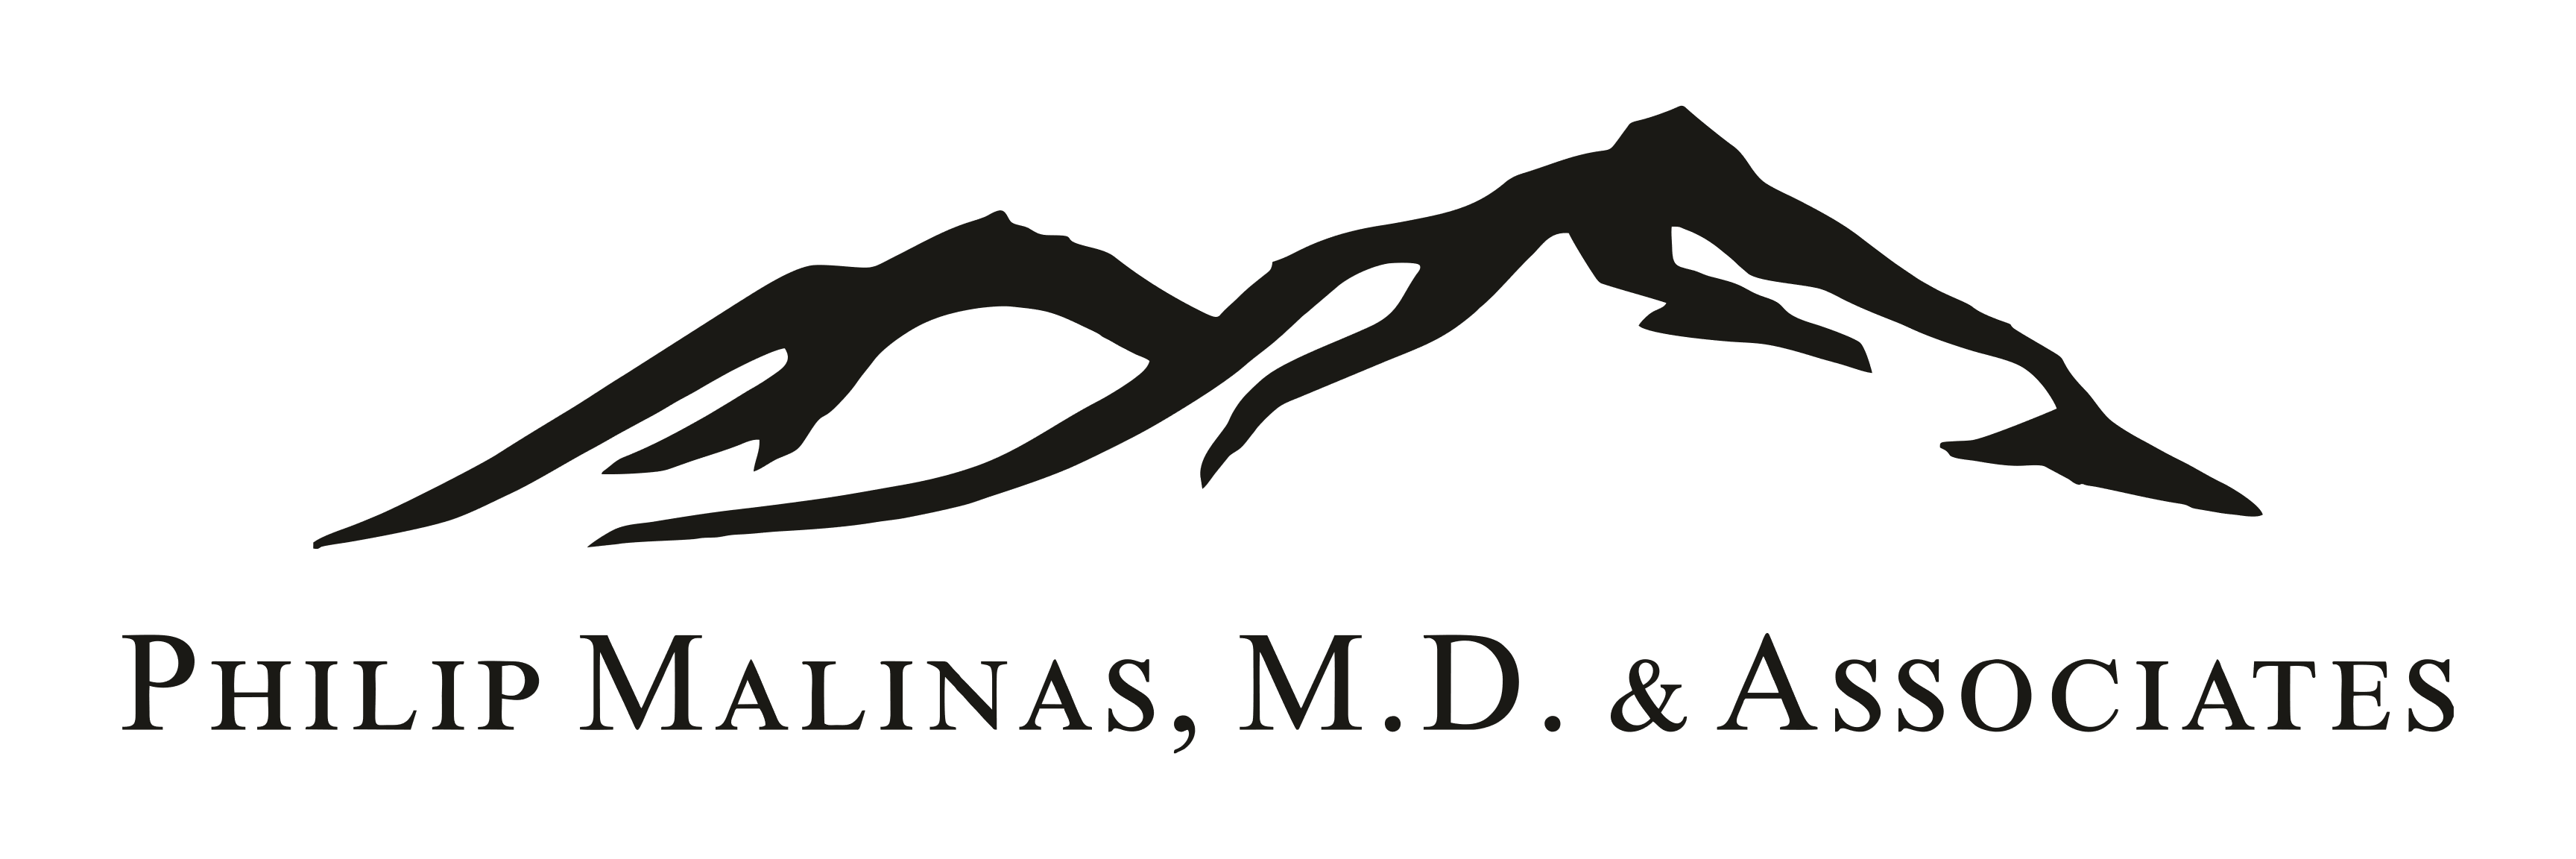 Dr. Malinas and Associates logo